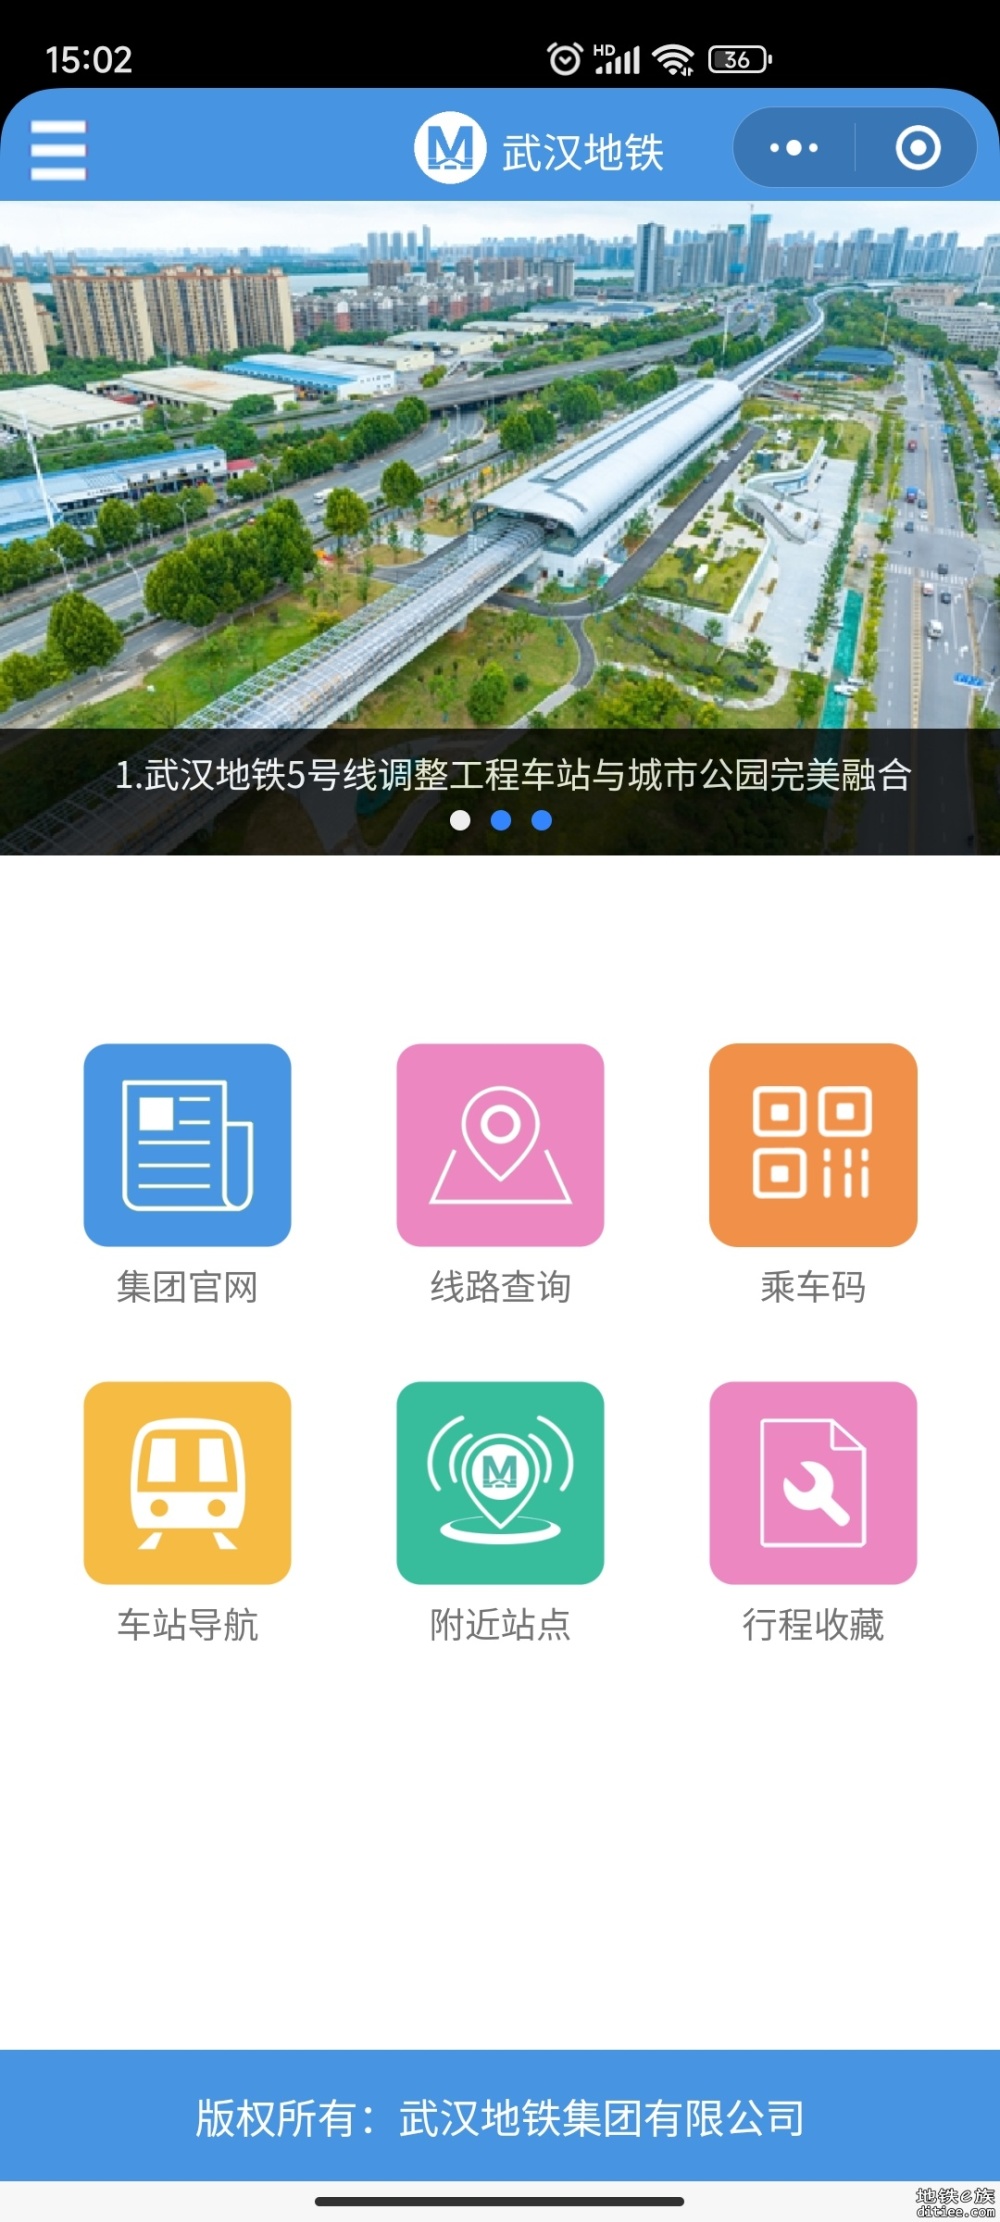 武汉地铁App迁移至微信小程序